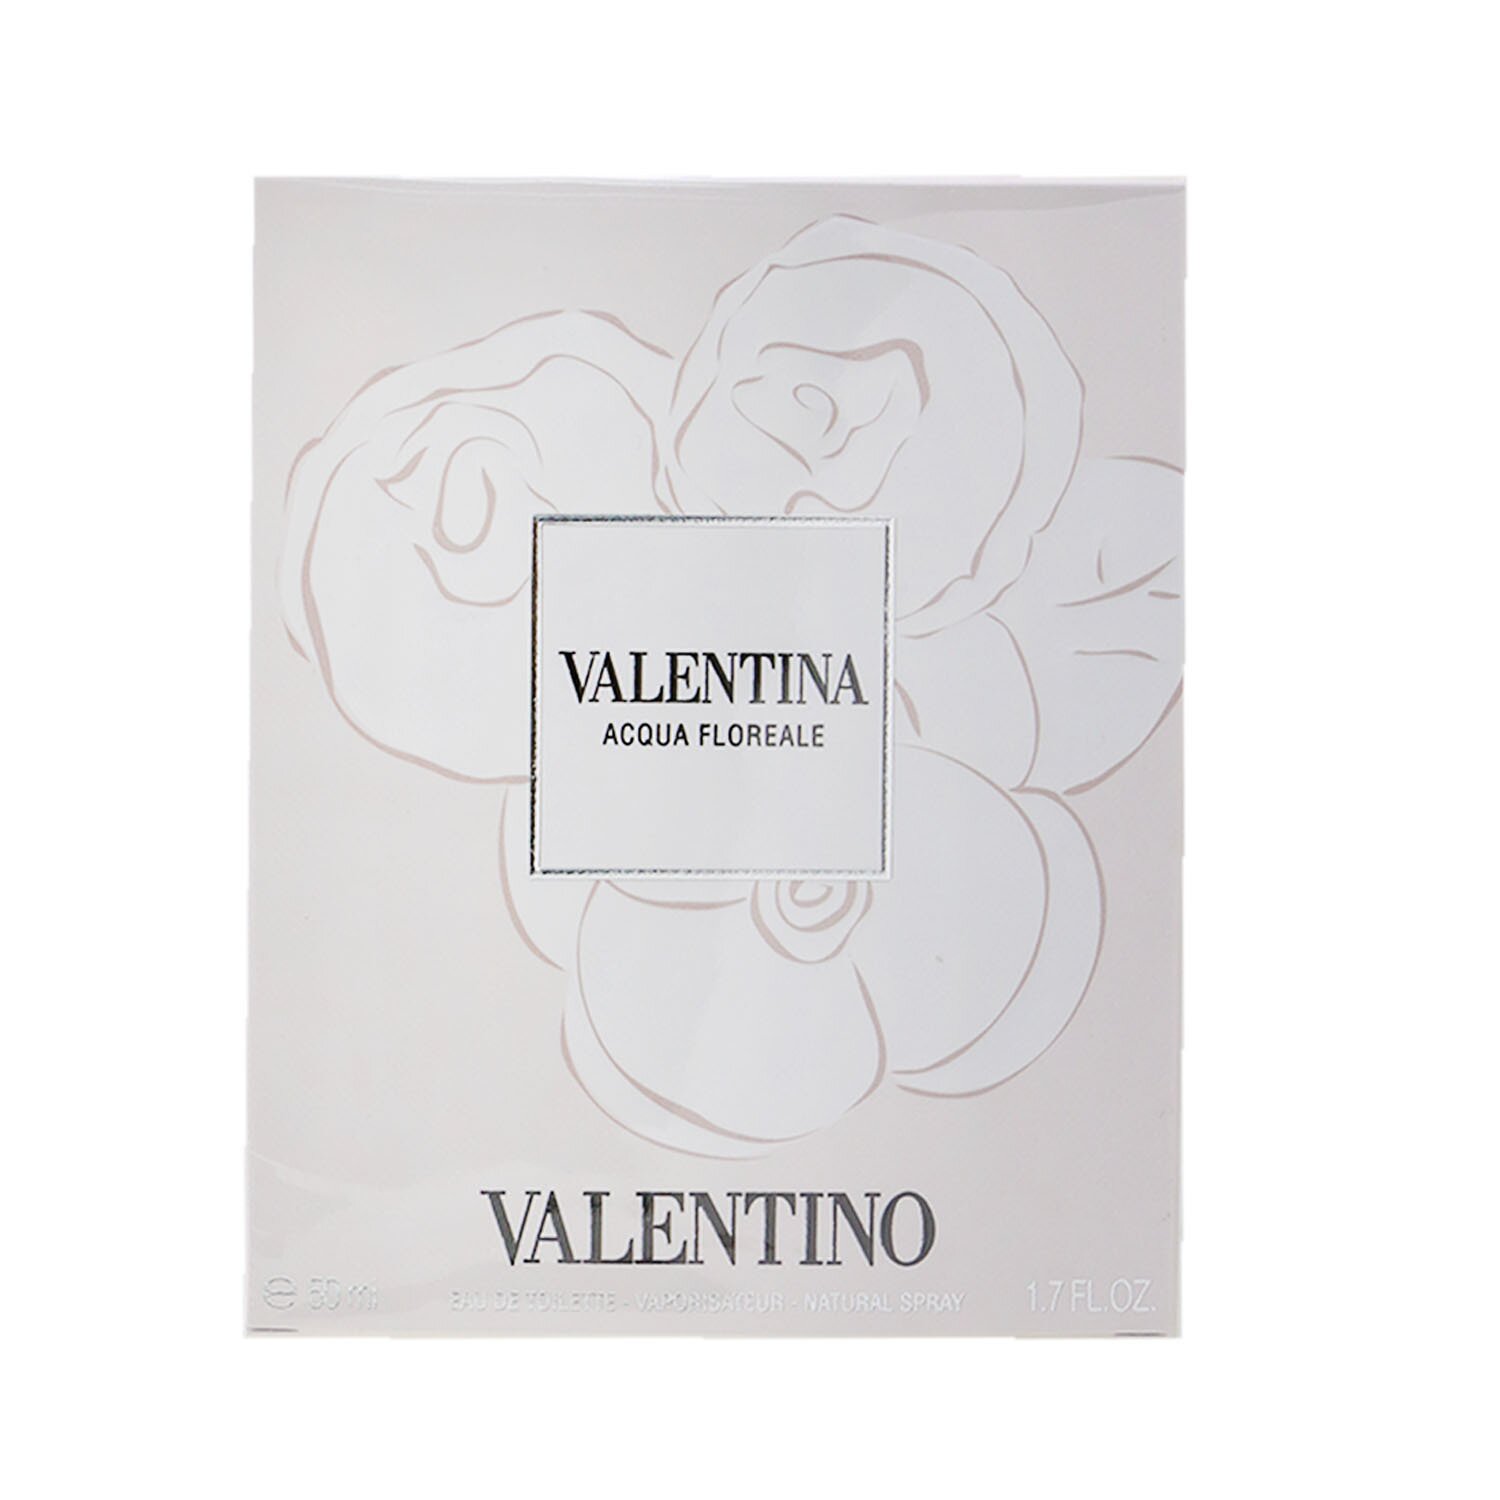 Valentino Valentina Acqua Floreale Eau De Toilette Spray 50ml/1.7oz